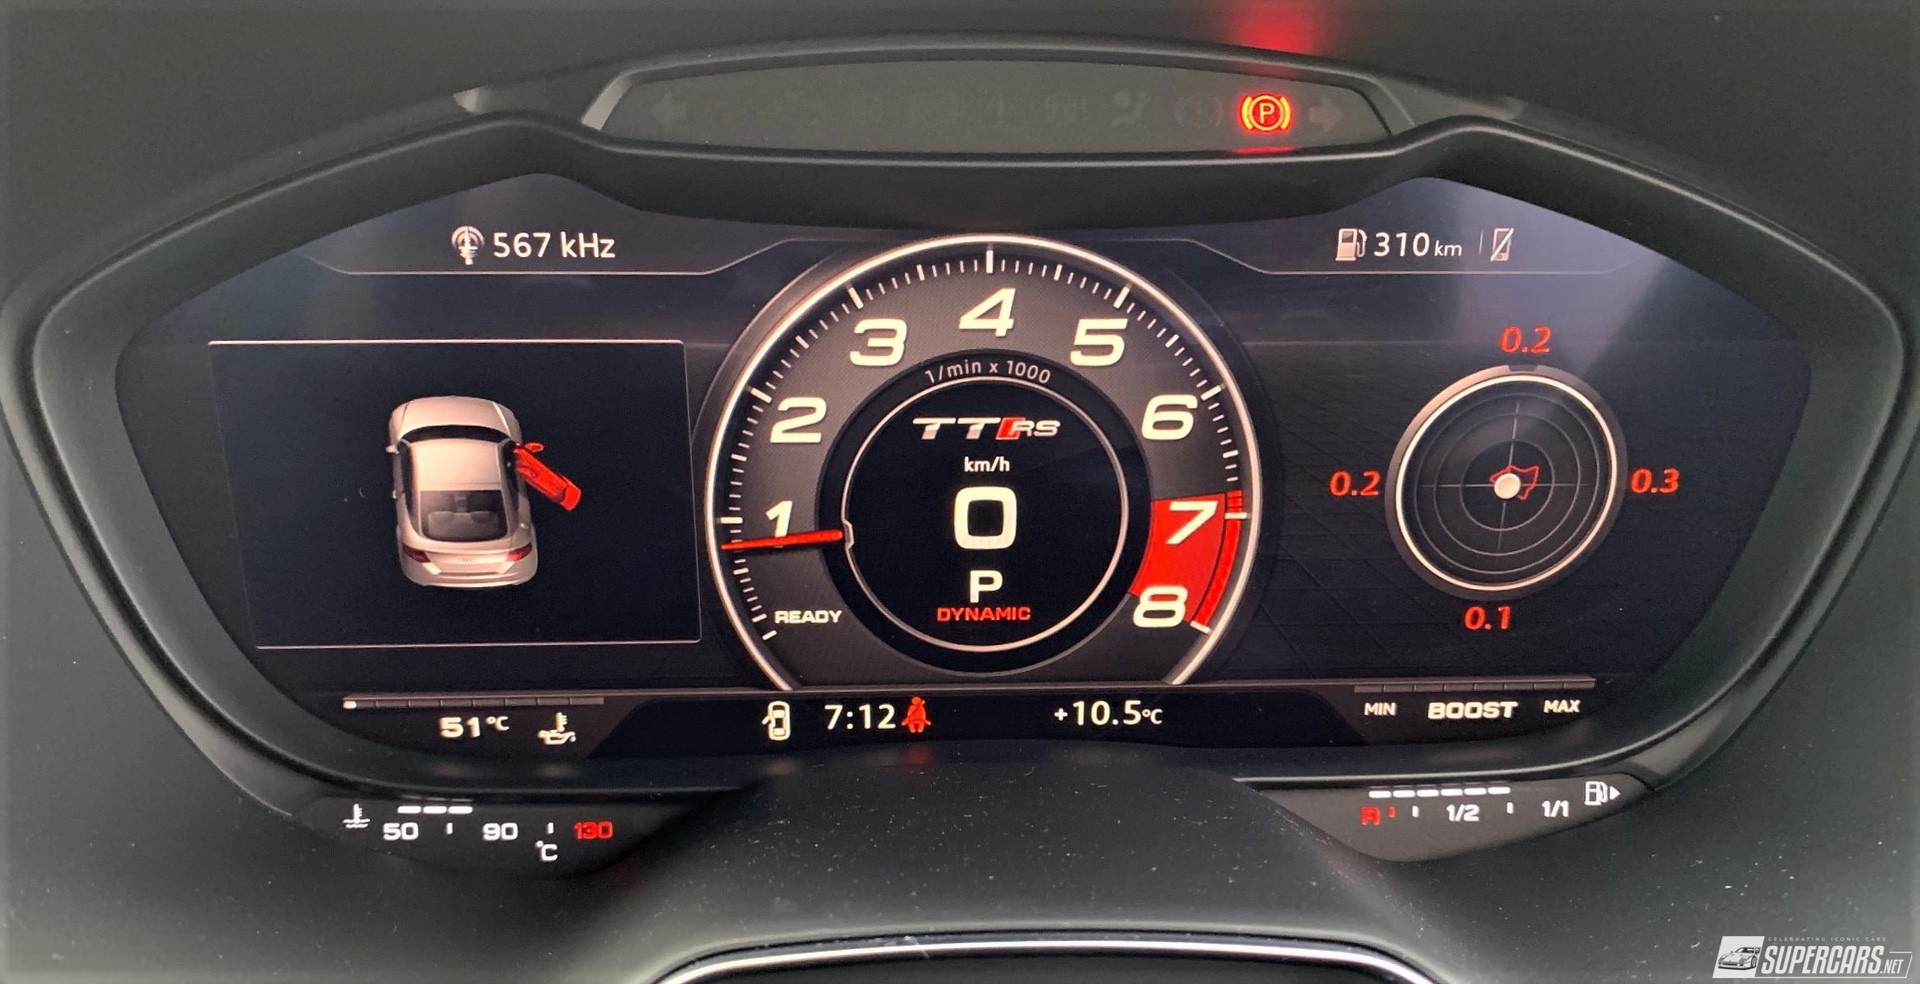 Cabin display of 2022 Audi TT RS